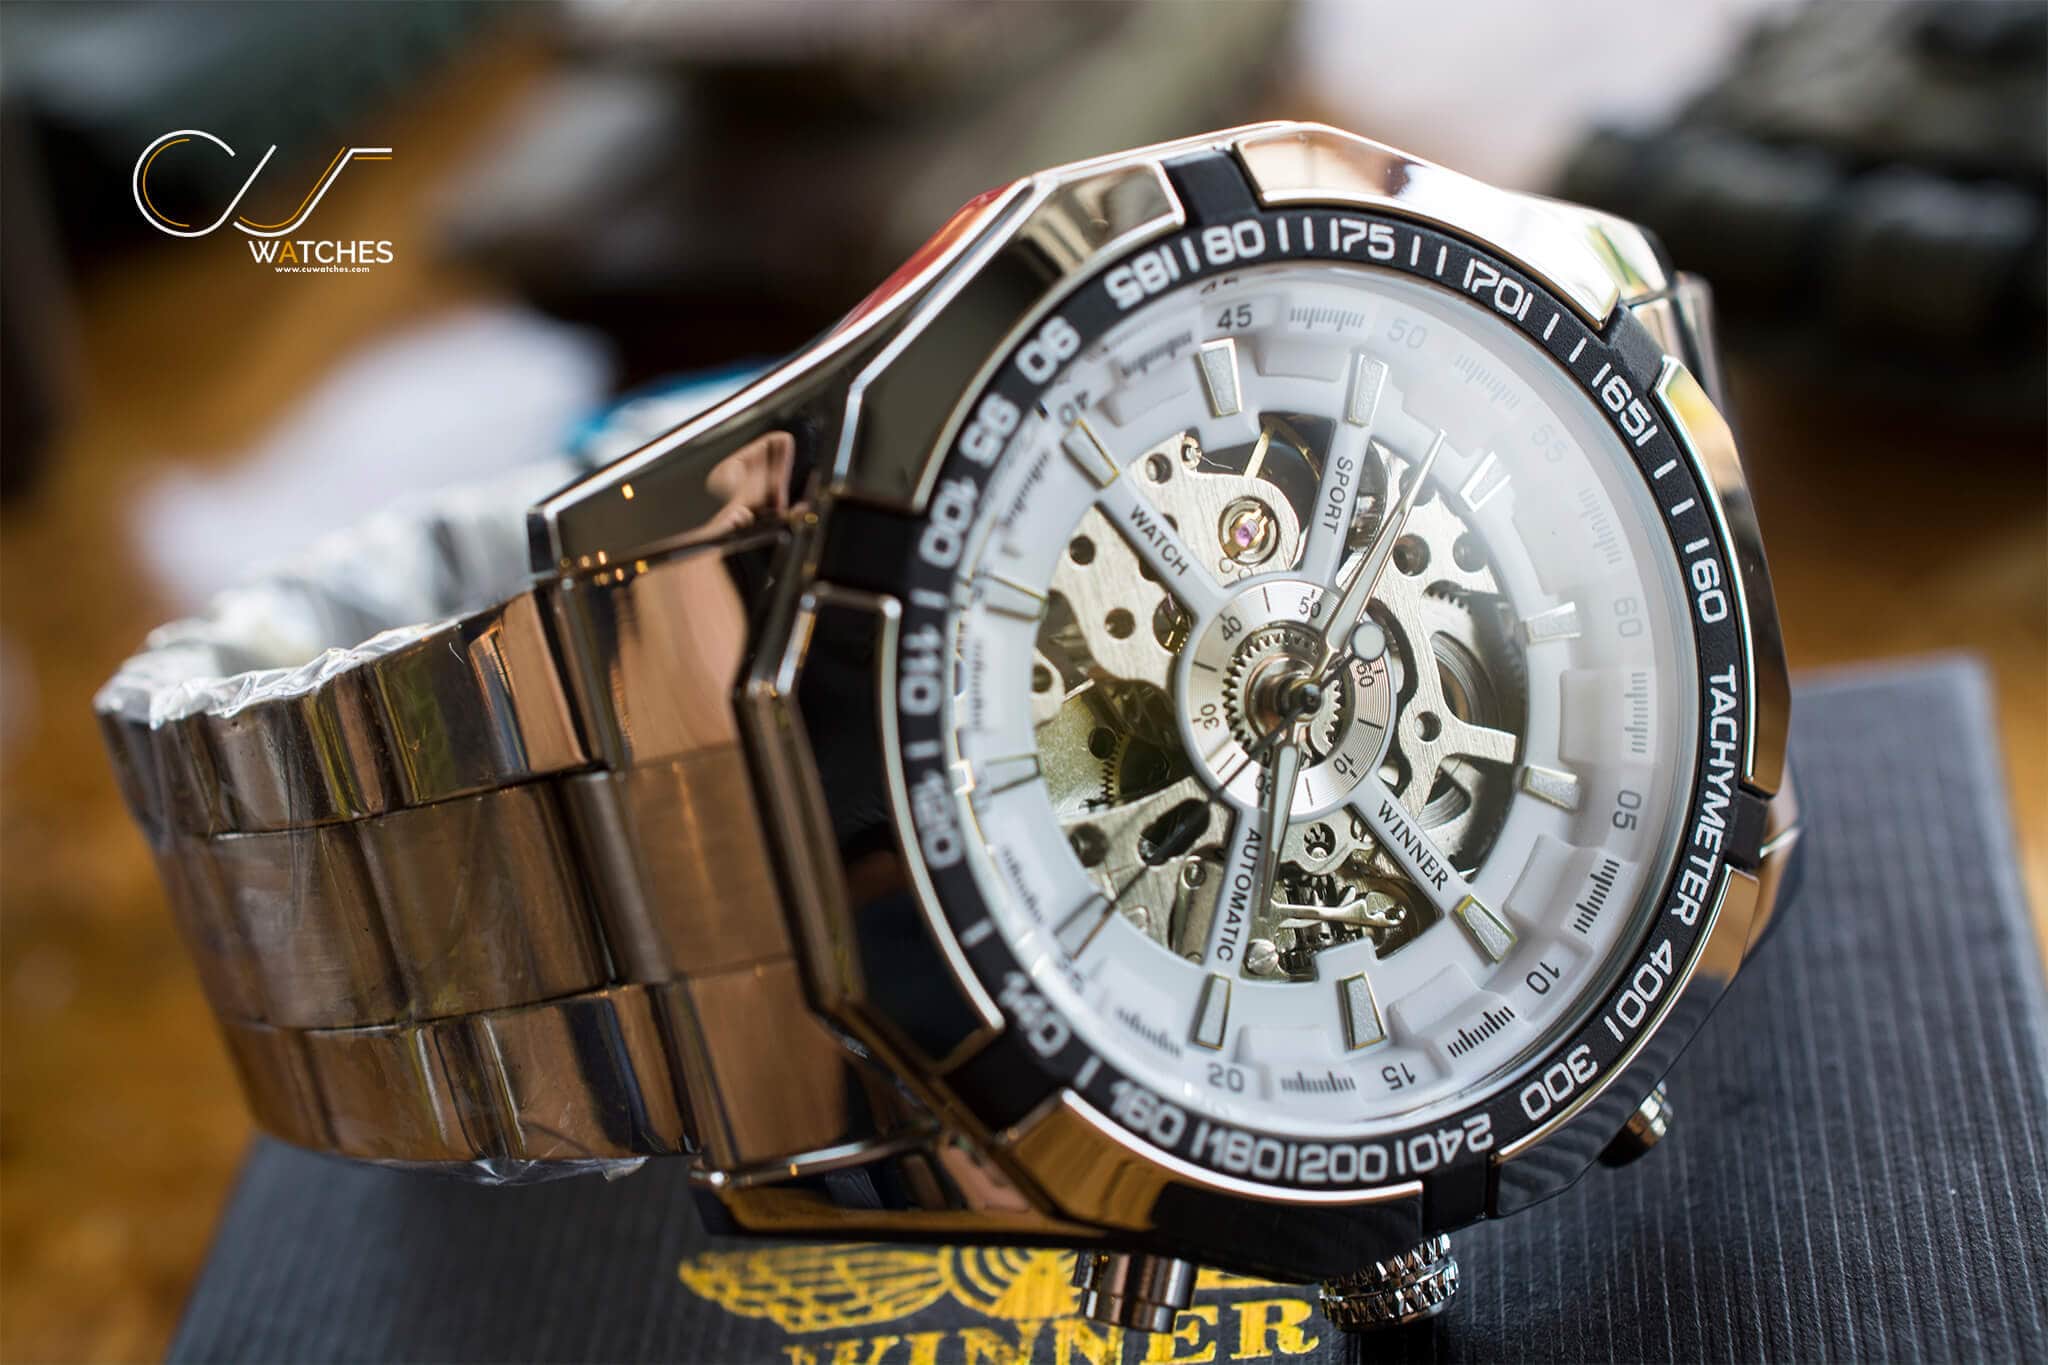 นาฬิกาข้อมือ WMT101 สายสแตนเลส หน้าปัดขาว รุ่น WMT101